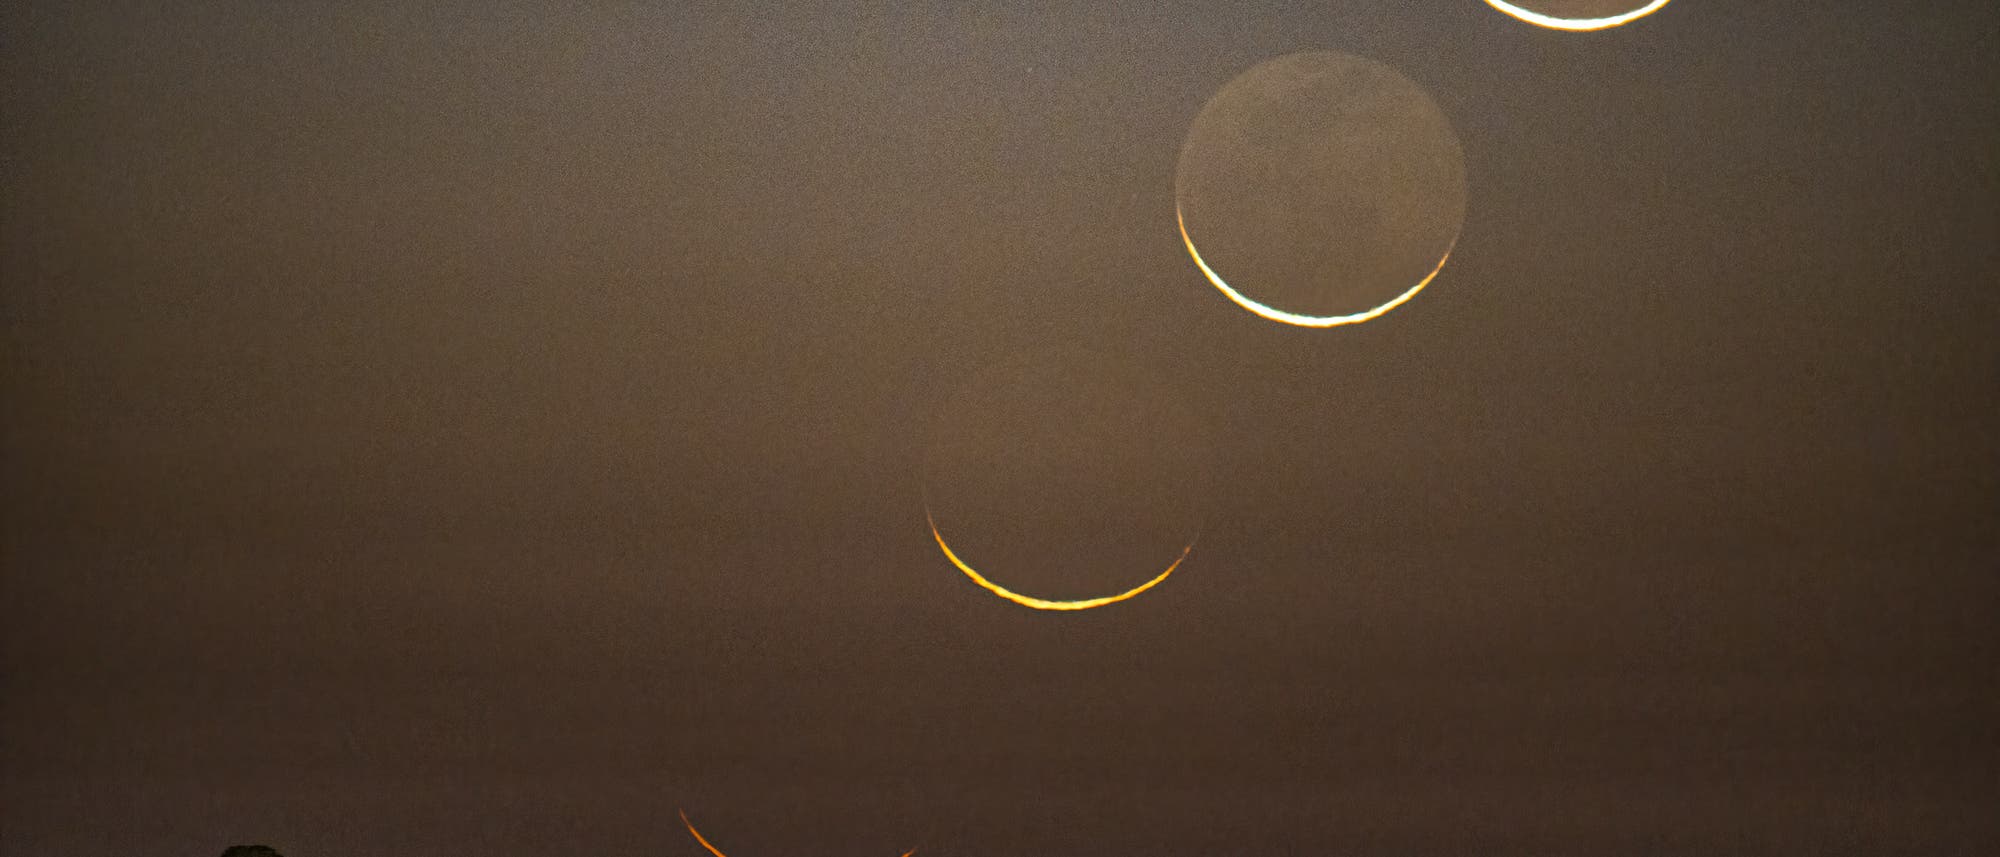 Am 24. Oktober 2022, einen Tag vor der partiellen Sonnenfinsternis über Europa, nahm Gianni Tumino die schmale Sichel des abnehmenden Mondes auf